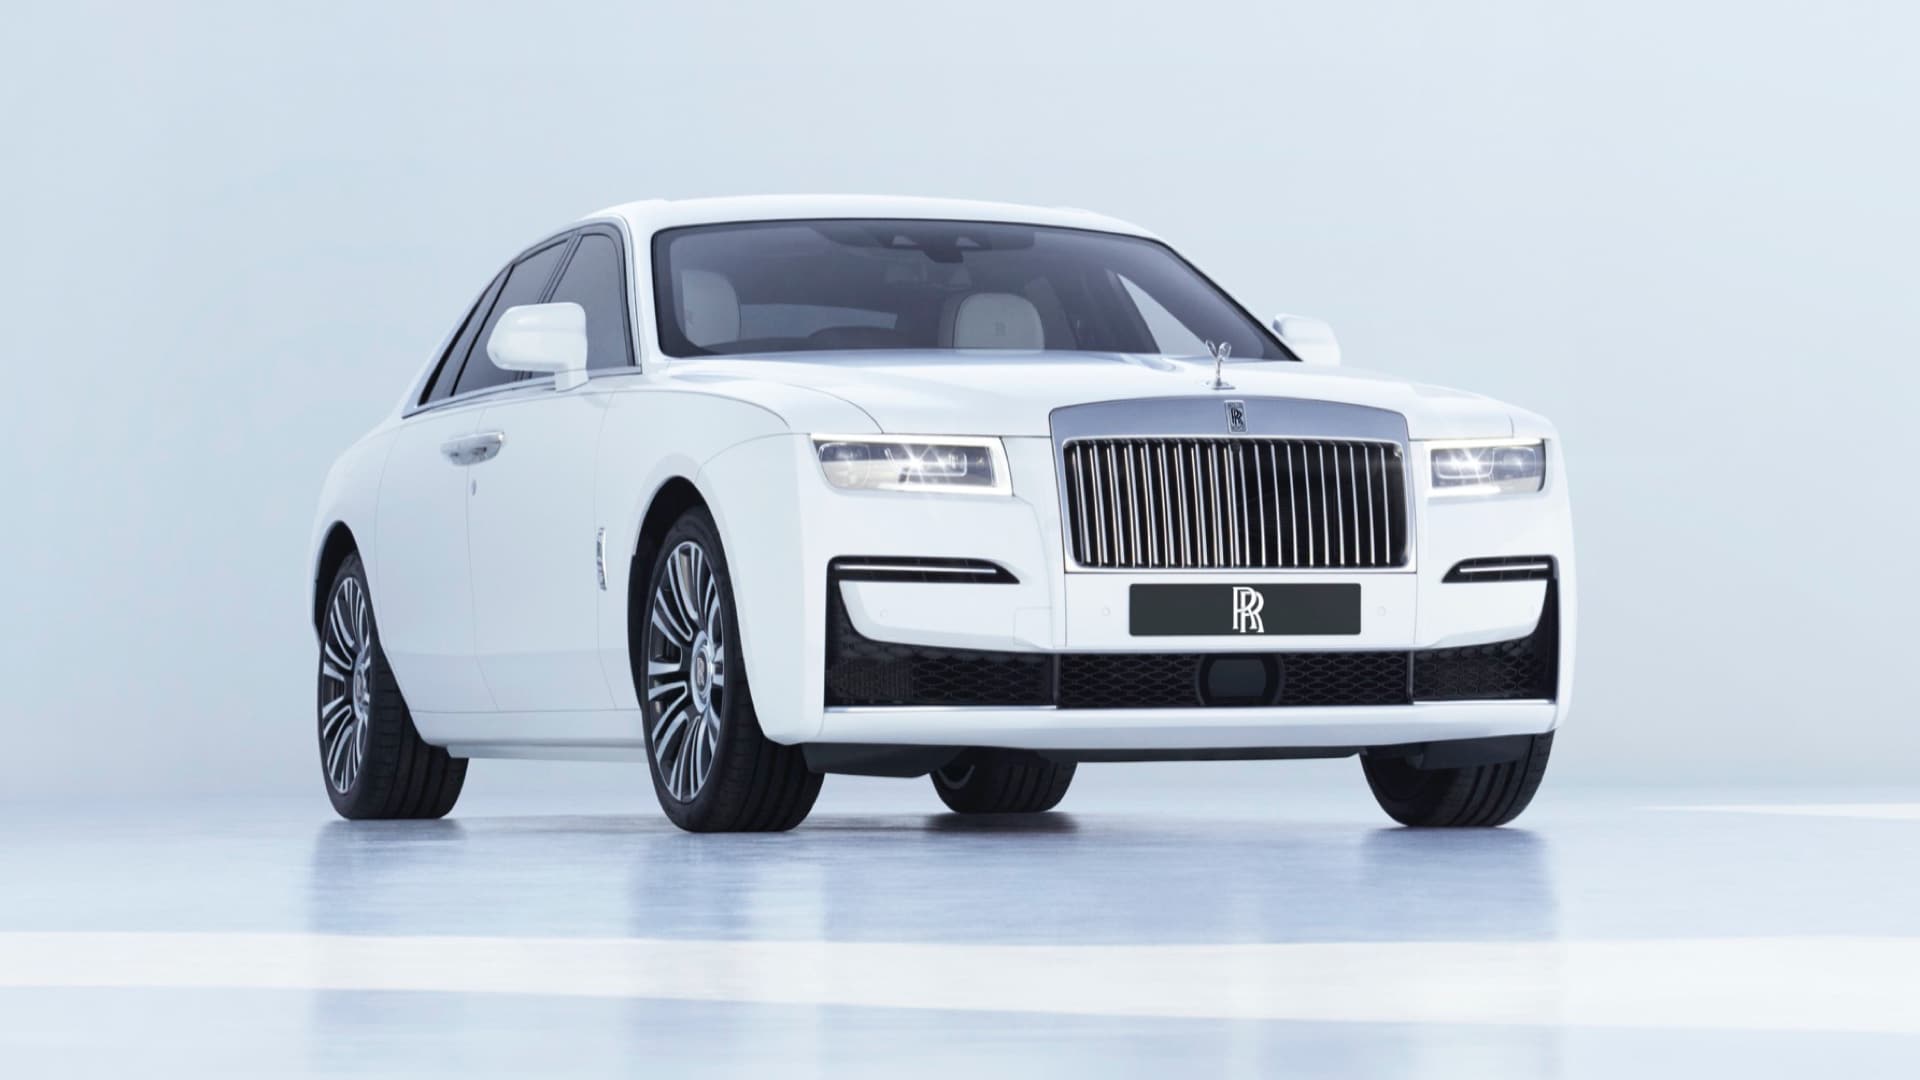 Kinh tế toàn cầu u ám, xe sang Rolls-Royce vẫn bán ào ào - Ảnh 1.